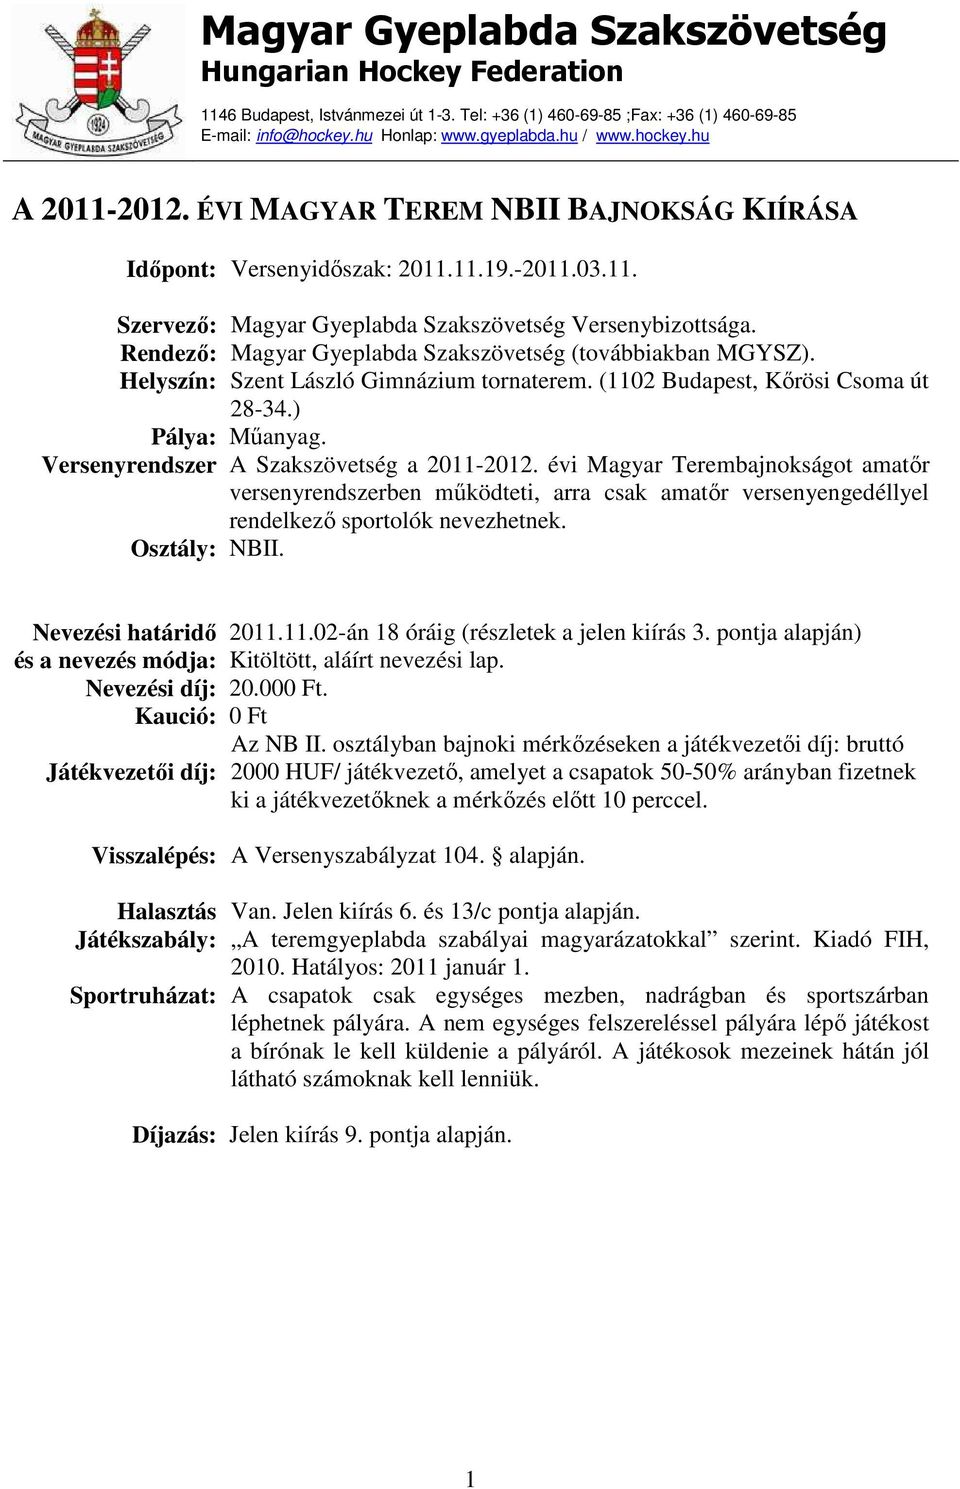 Rendező: Magyar Gyeplabda Szakszövetség (továbbiakban MGYSZ). Helyszín: Szent László Gimnázium tornaterem. (1102 Budapest, Kőrösi Csoma út 28-34.) Pálya: Műanyag.